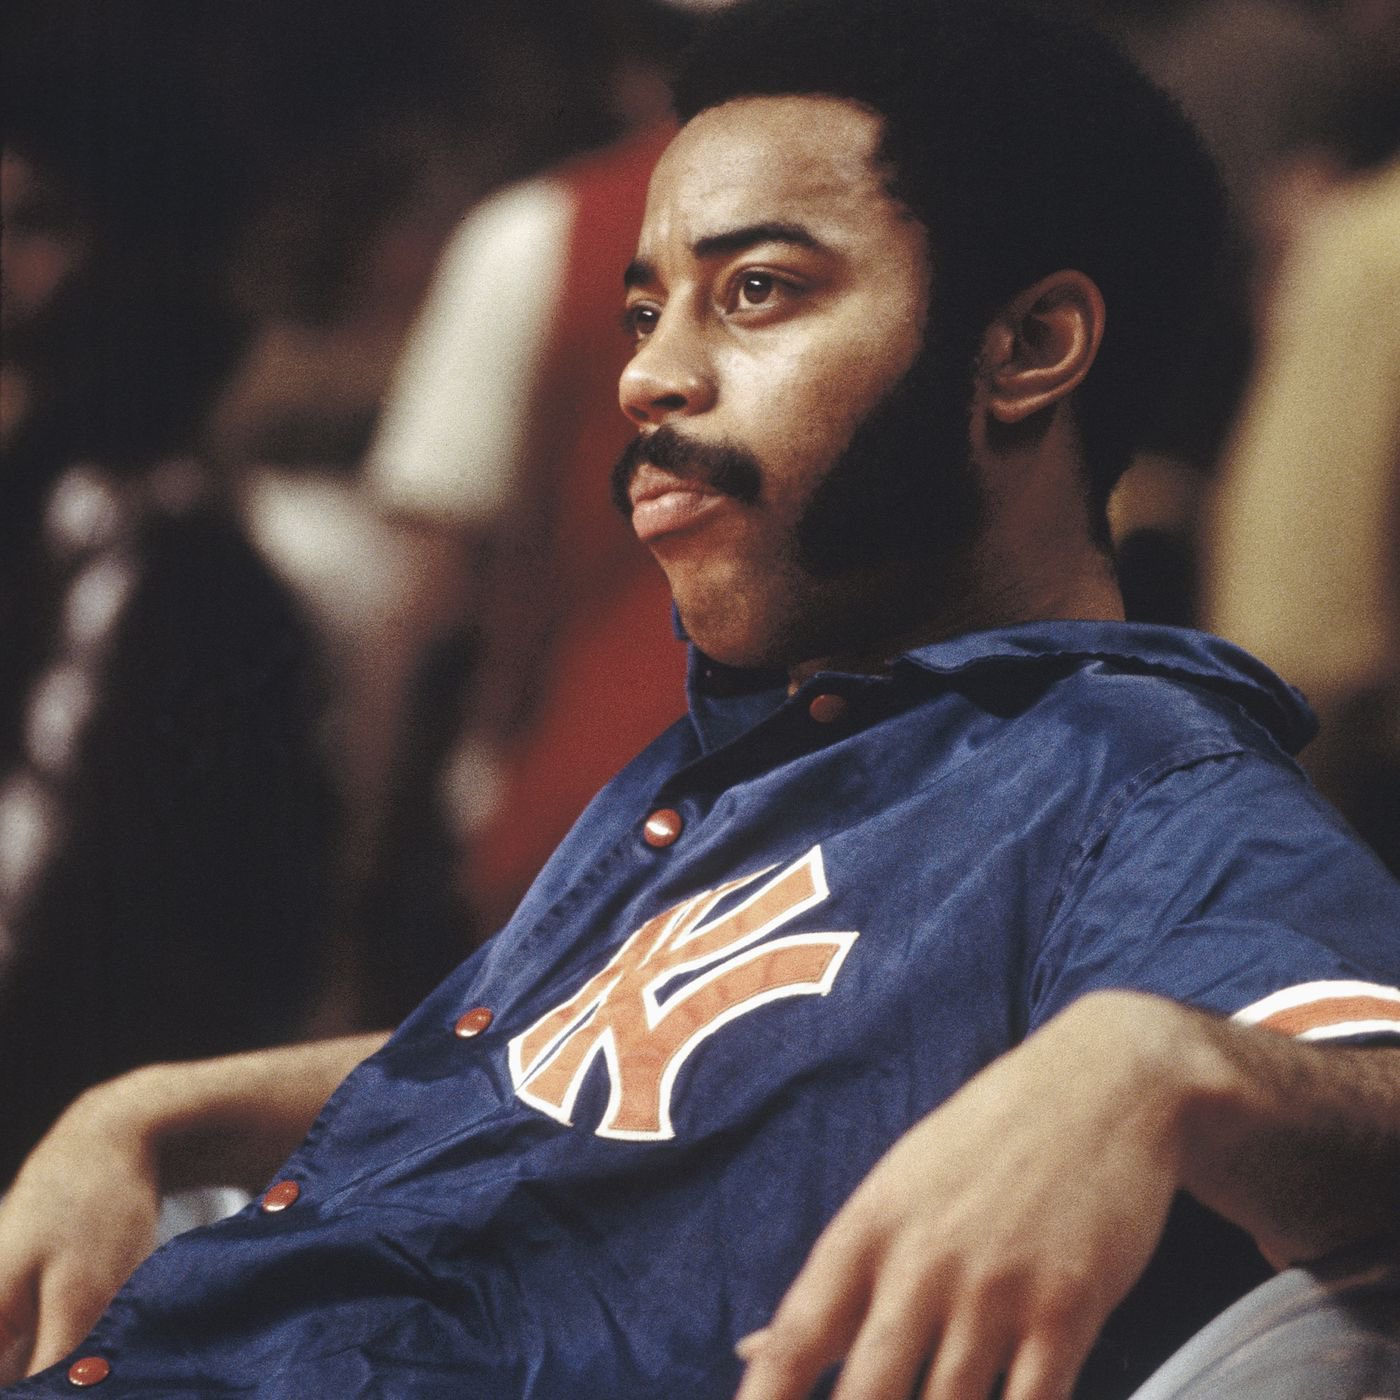 Happy birthday to Knicks legend, Walt Frazier! 